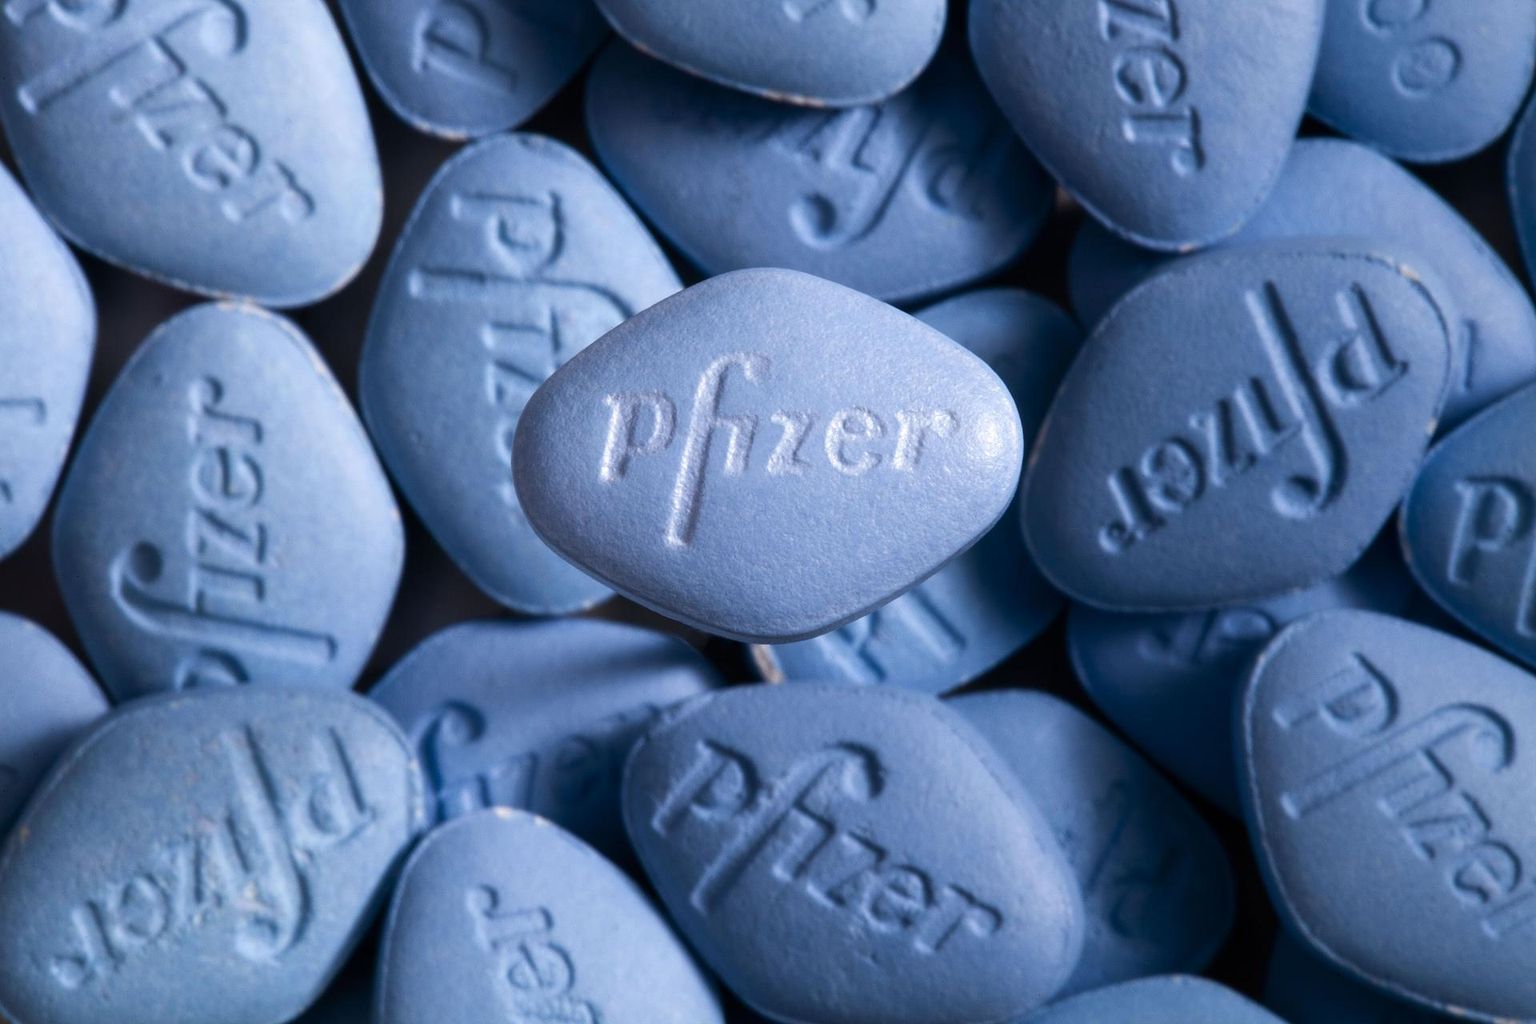 Viagra tablette on saatnud suur menu – müügiloa saamise aastal ehk 1998. aastal müüdi neid 788 miljoni USA dollari väärtuses.